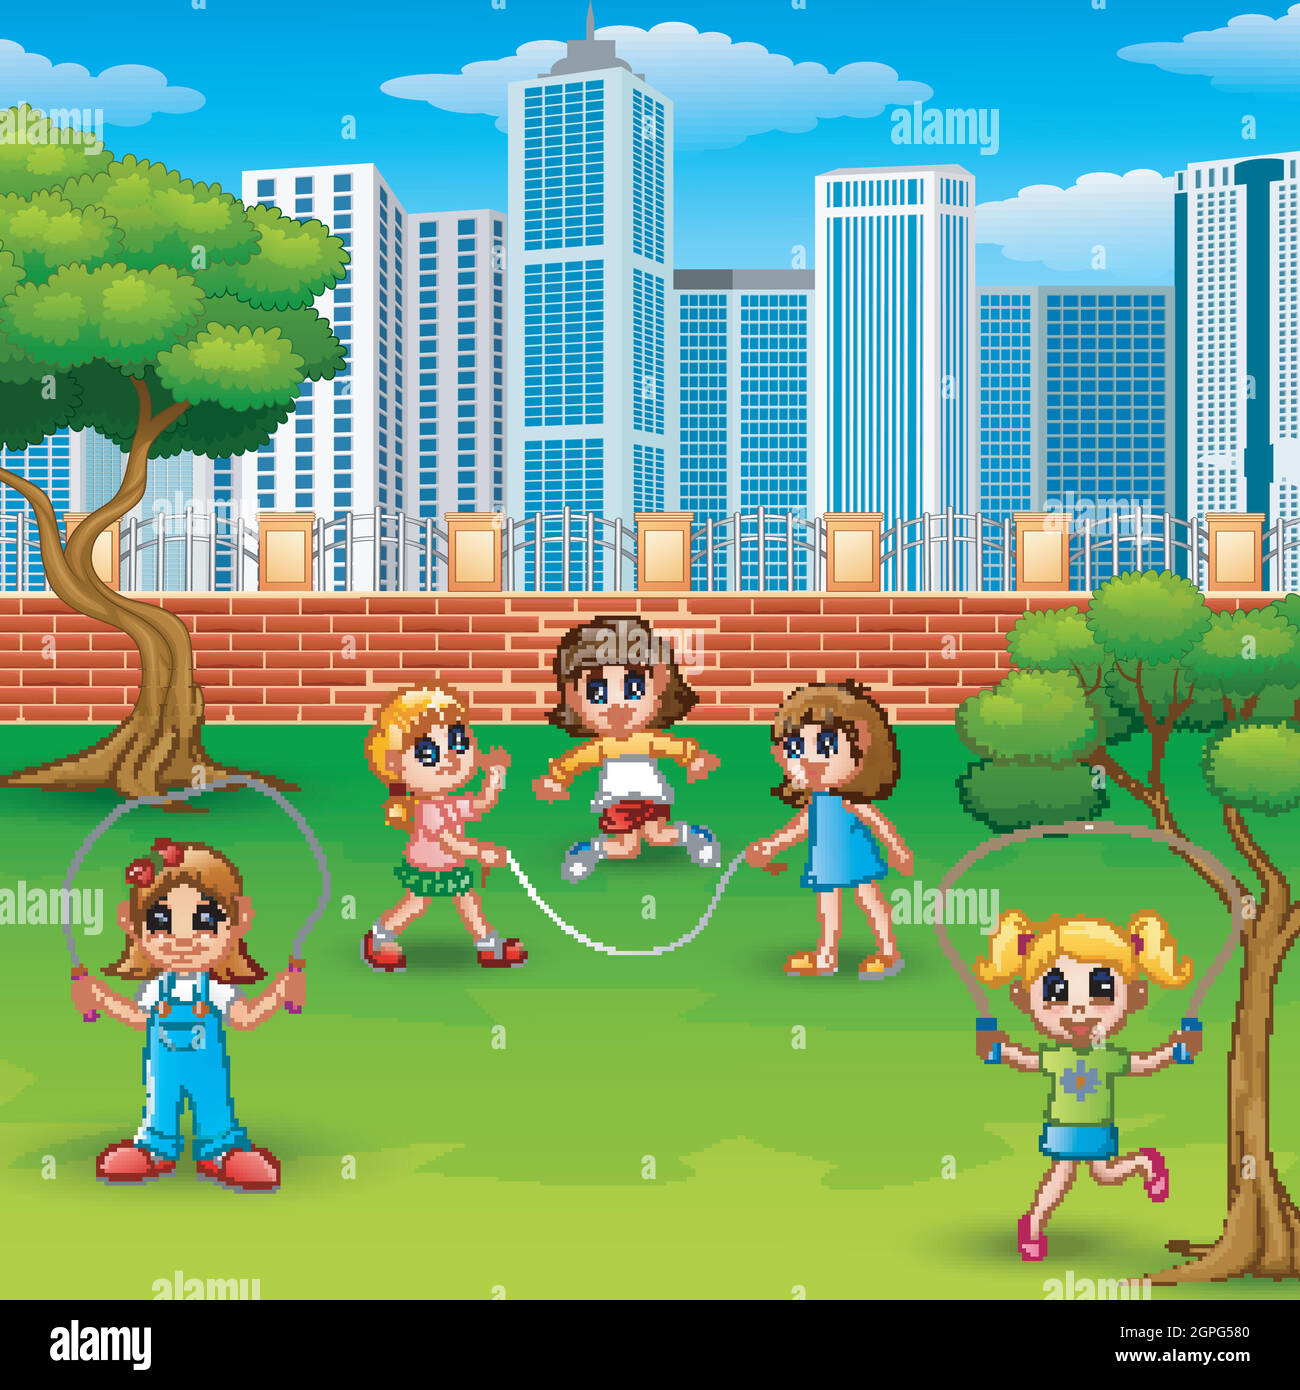 Le ragazze di cartoni animati giocano a saltare la corda nel parco Immagine  e Vettoriale - Alamy